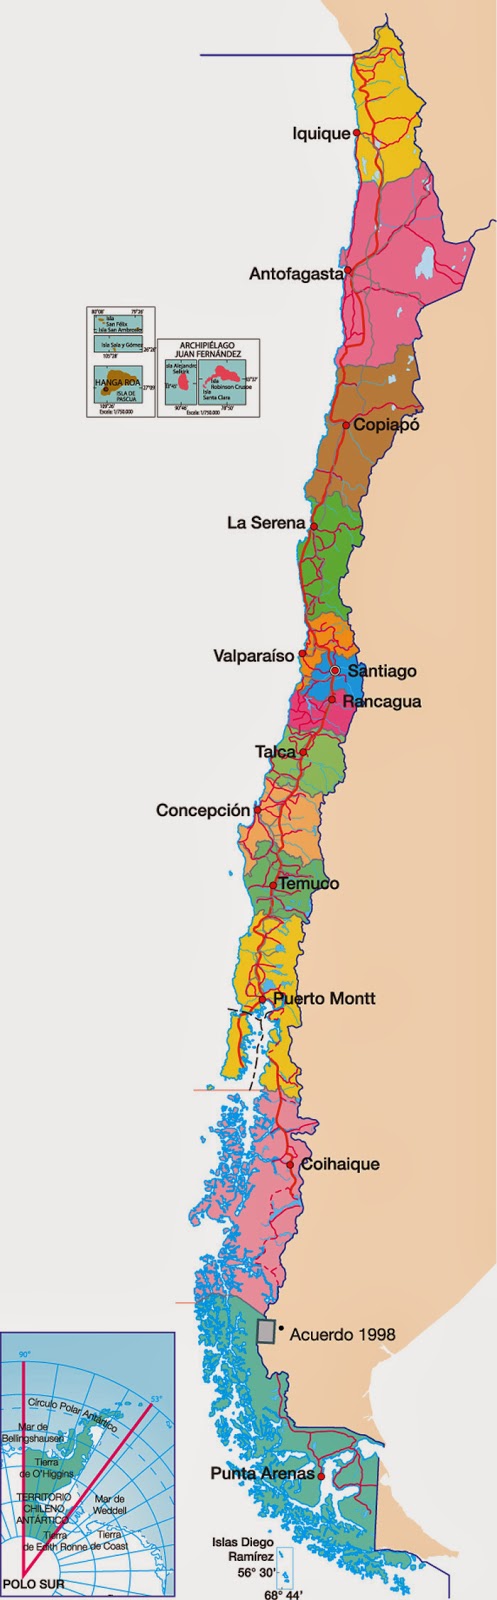 Geografía turística de Chile y el Mundo: Conociendo Chile